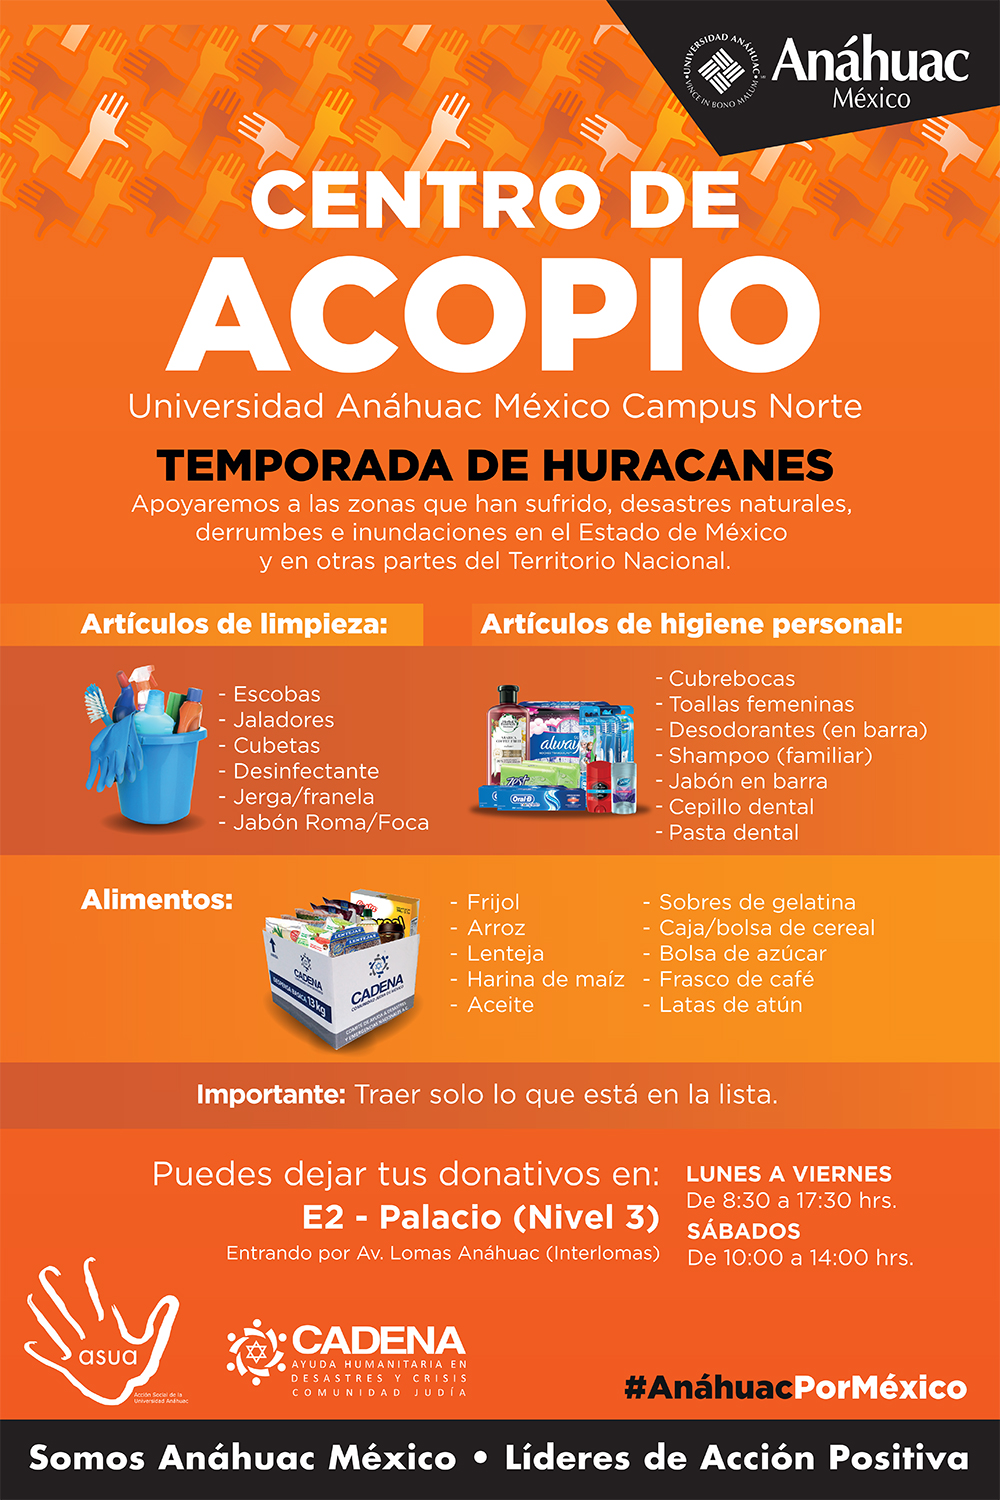 Centro de Acopio Anáhuac: Ayudemos a nuestros hermanos afectados